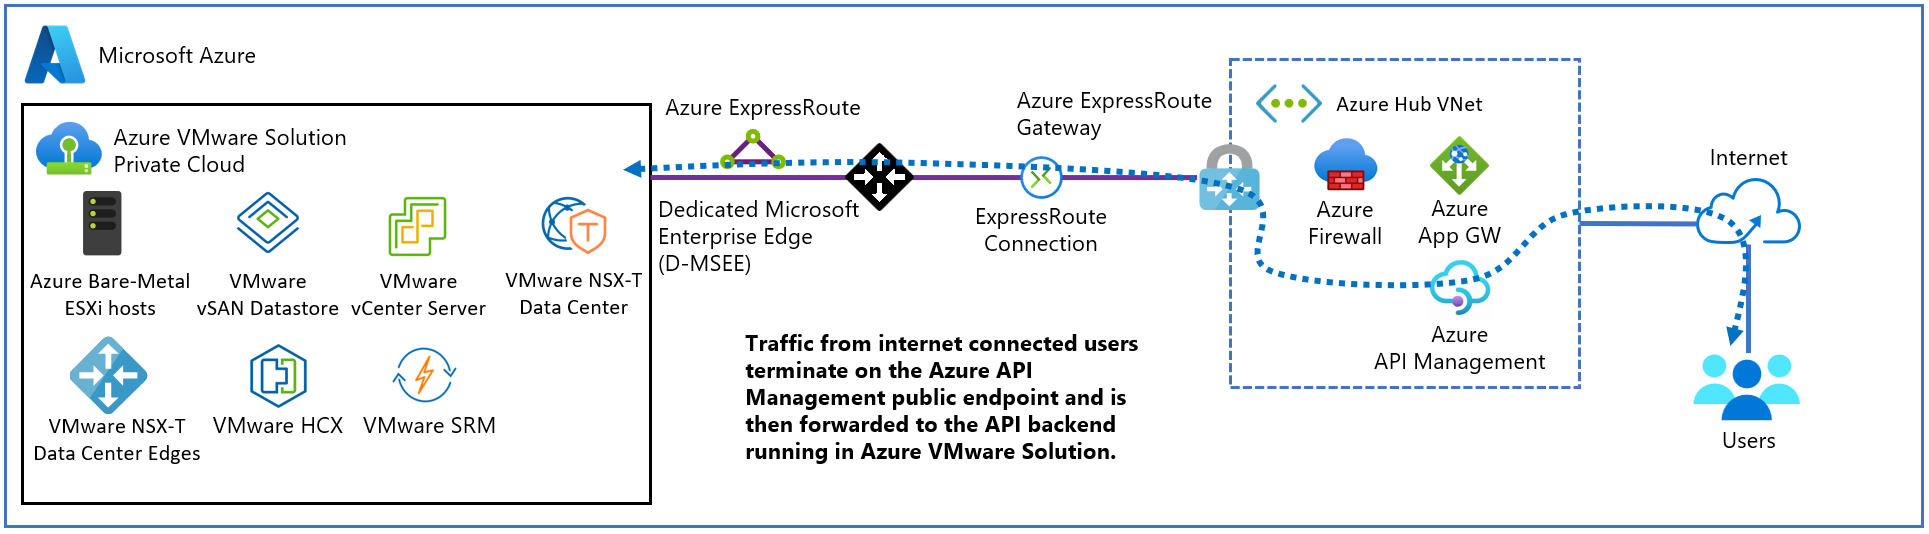 Diagramm: Externe API Management-Bereitstellung für Azure VMware Solution